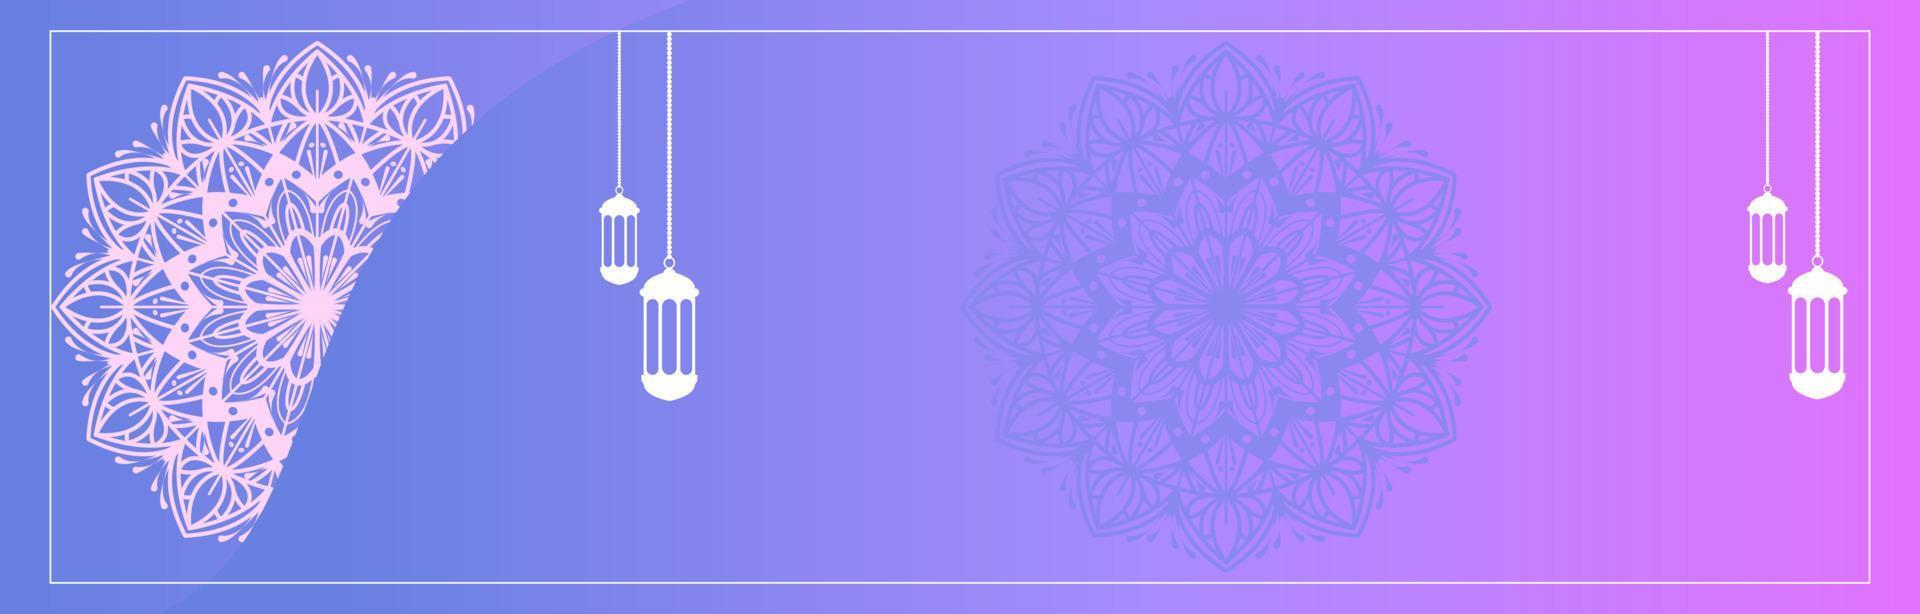 islamisk bakgrundsvektorgrafik med arabiska mandala etniska element för eid, ramadan kareem, muharram eller eid mubarak banners vektor